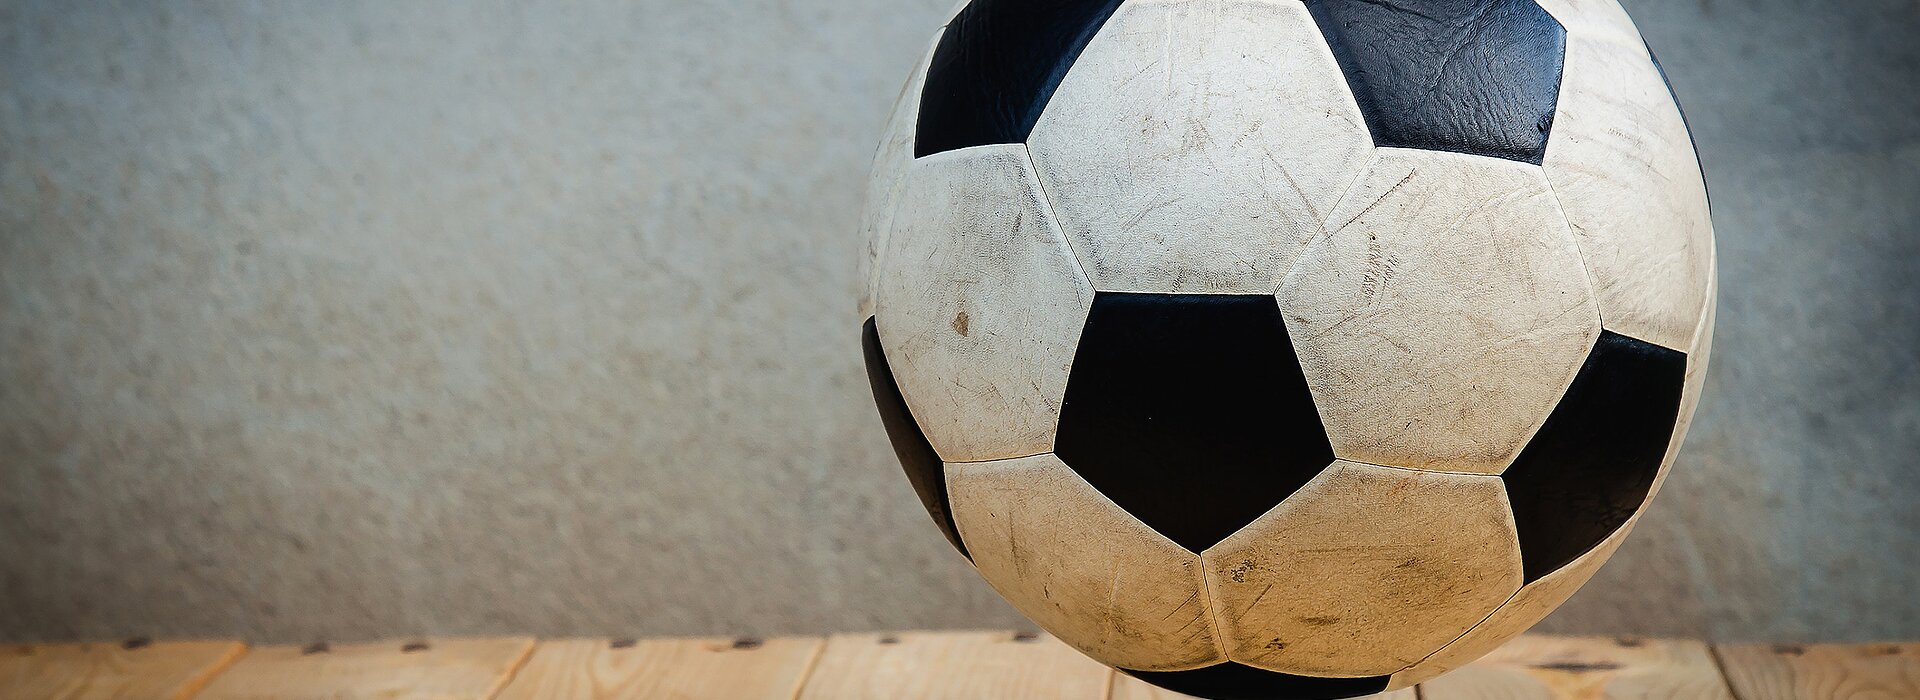 Fundo de equipamentos esportivos conceito de esporte com bolas e itens de jogos  bolas para futebol